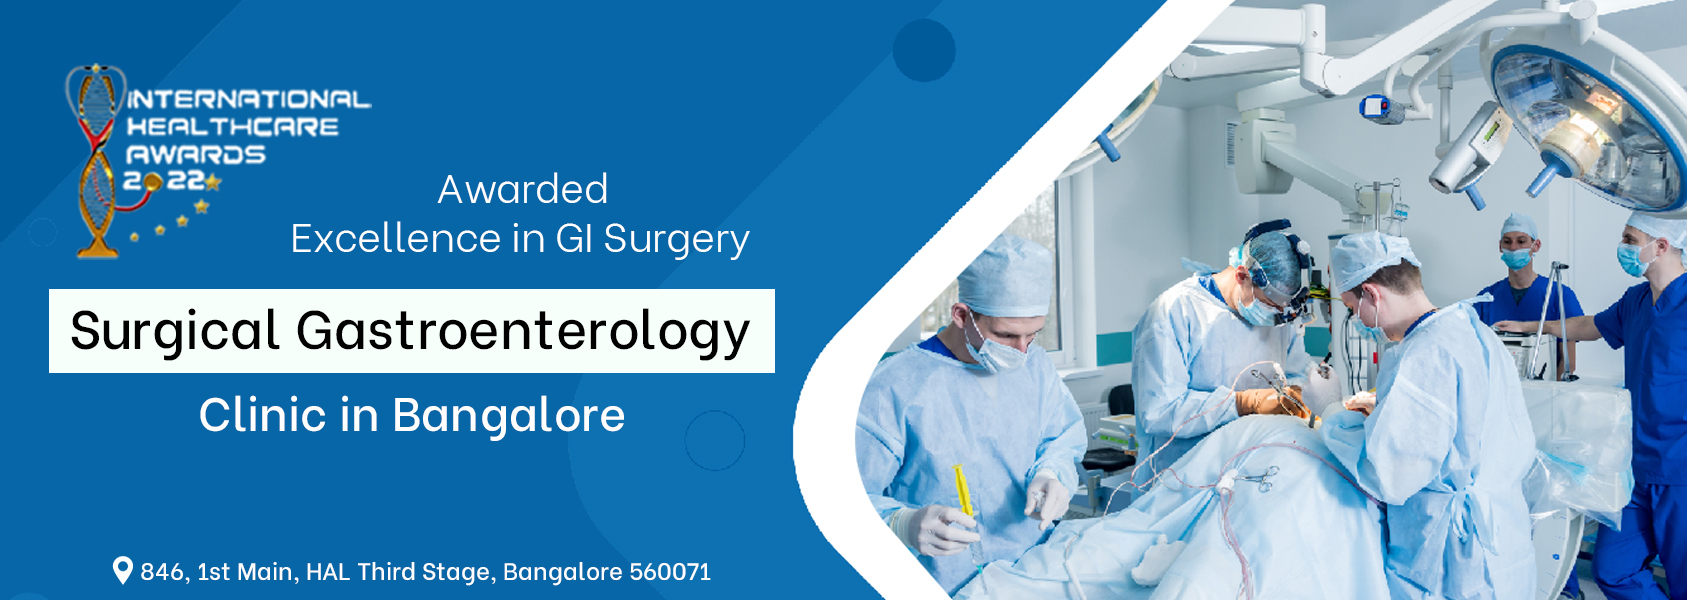 Surgical Gastroenterology Clinics